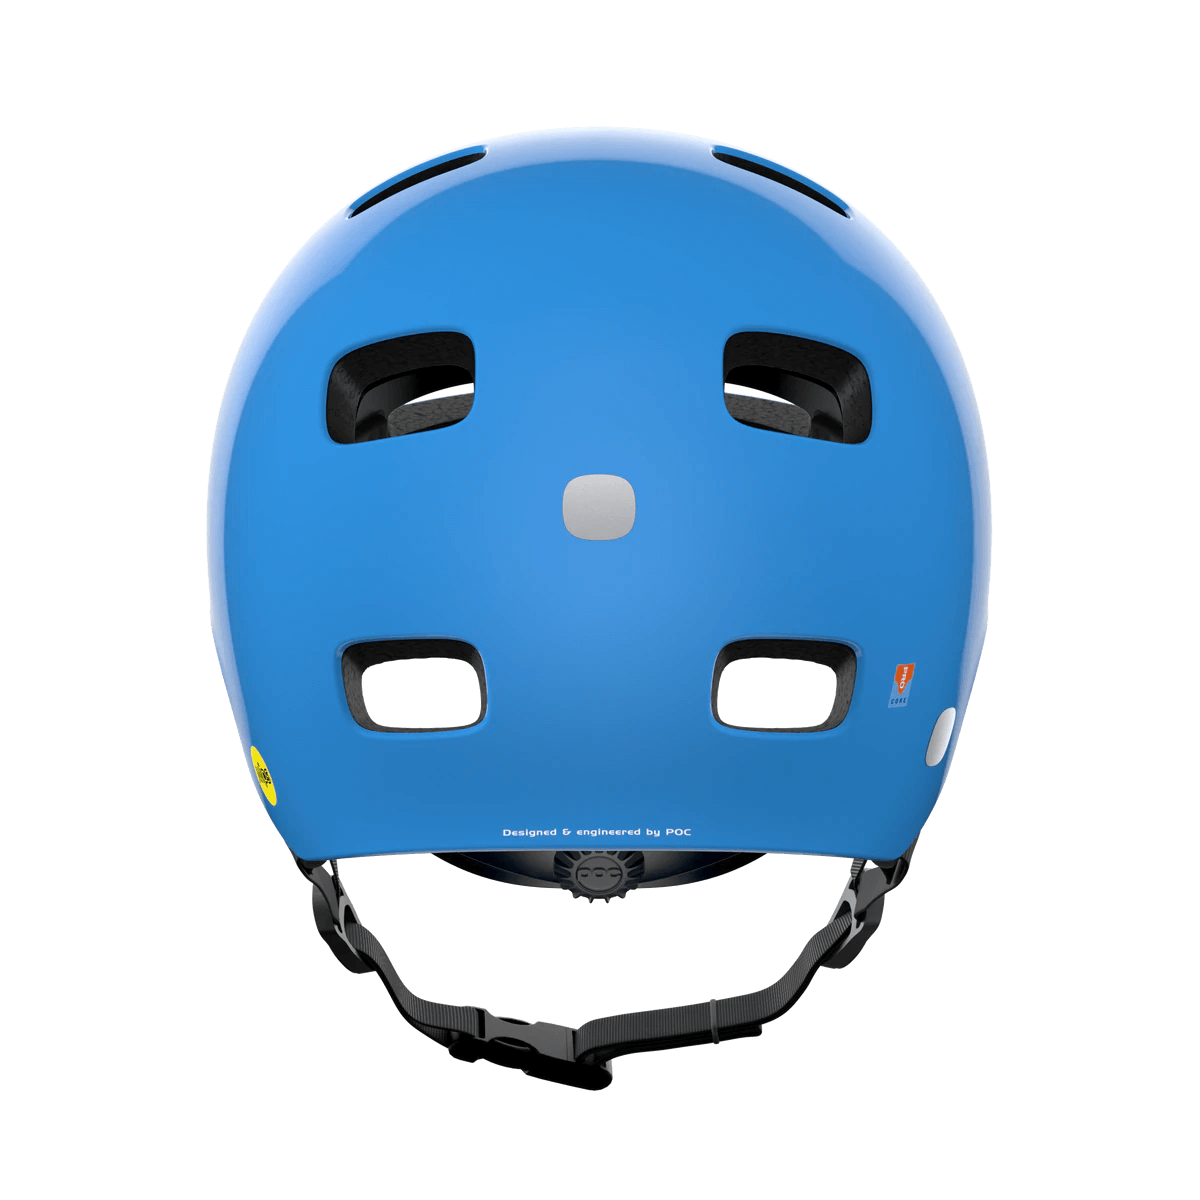 ロードバイク用ヘルメット 10570-8233 ポキートクレーンミップス Pocito Crane Mips - Flourescent Blue [チャイルド]